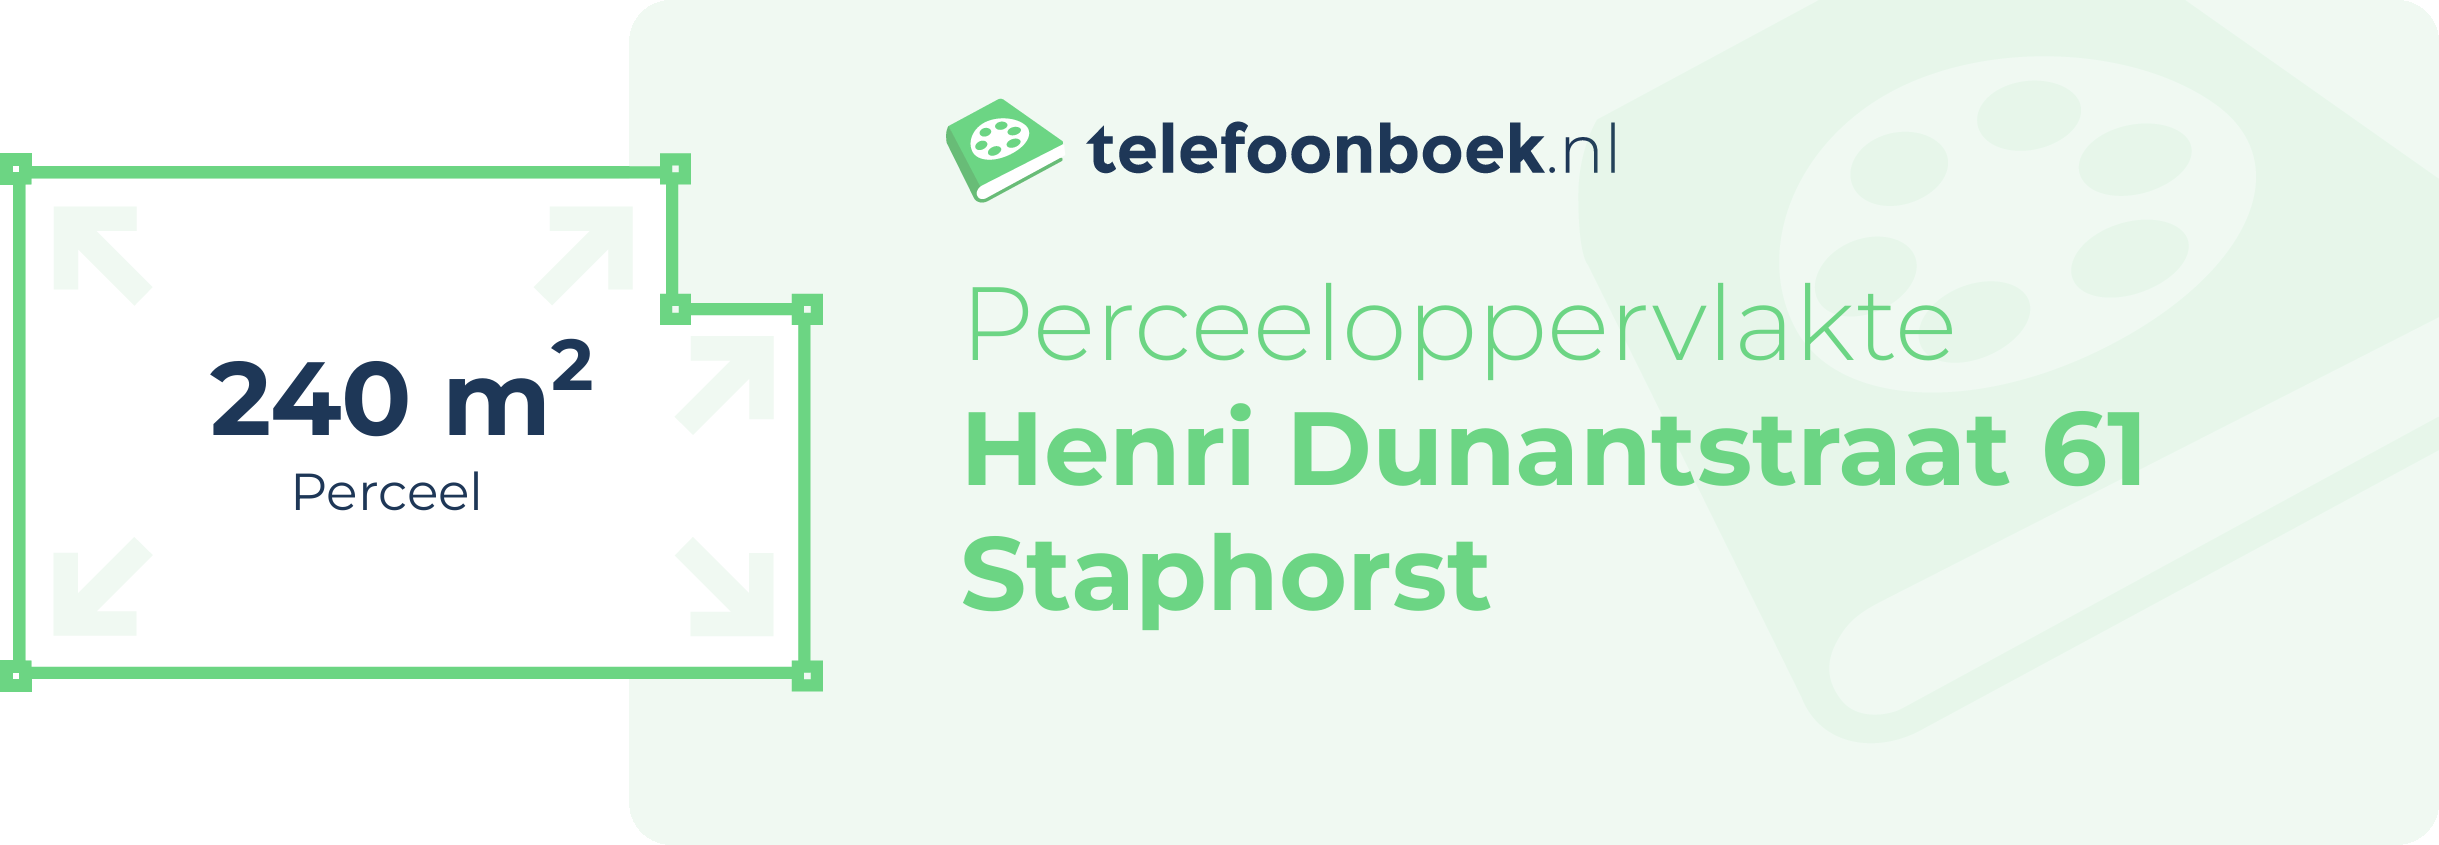 Perceeloppervlakte Henri Dunantstraat 61 Staphorst